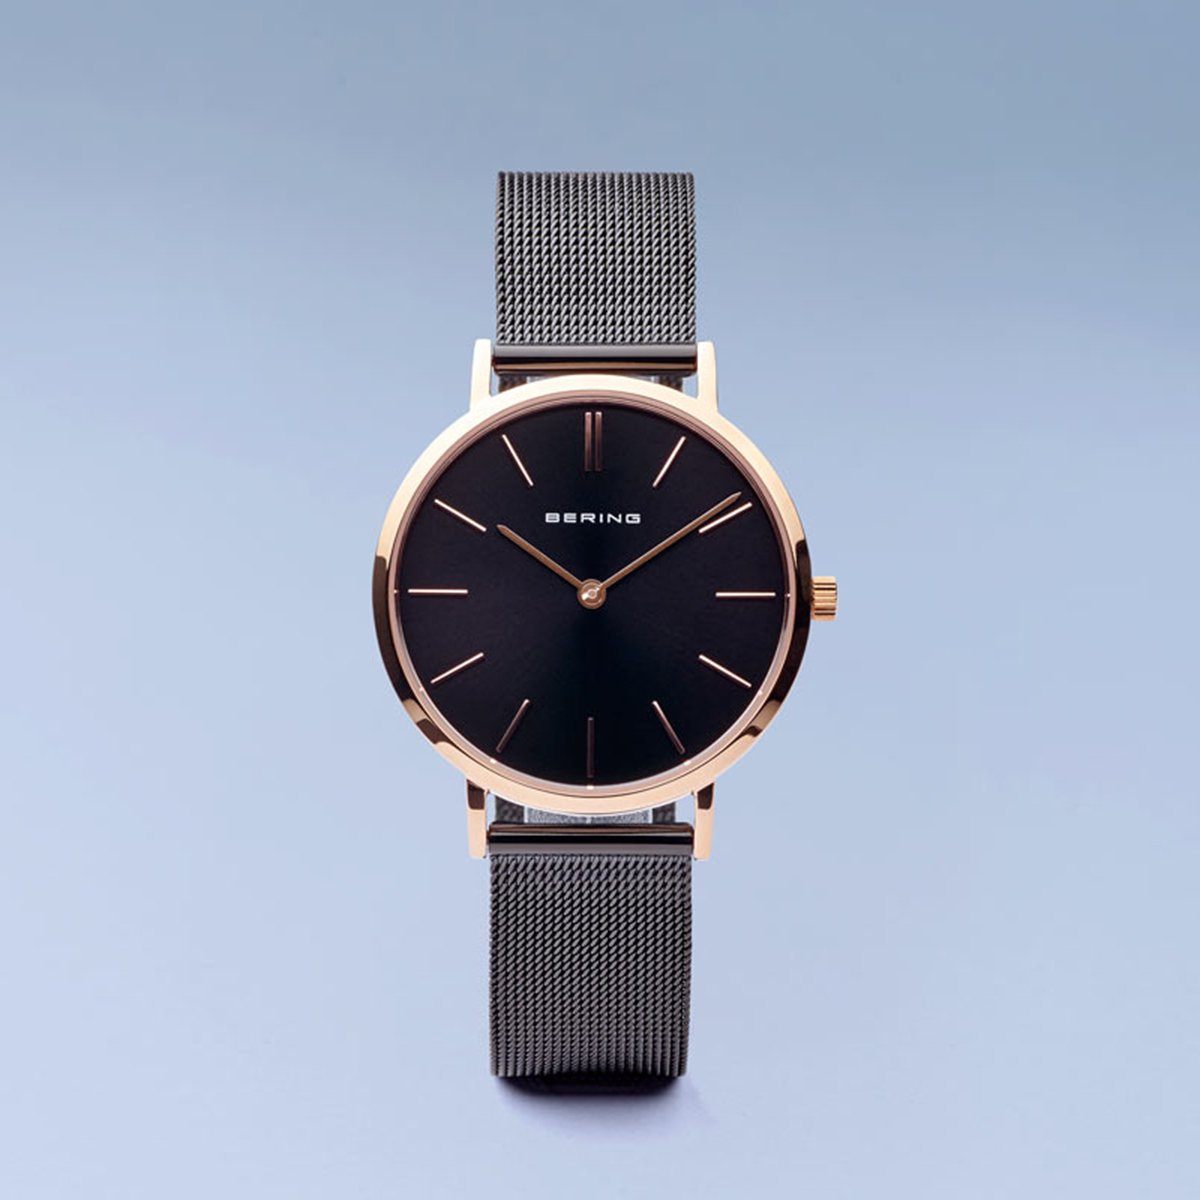 Reloj Bering mujer minimalista malla negro y rosado